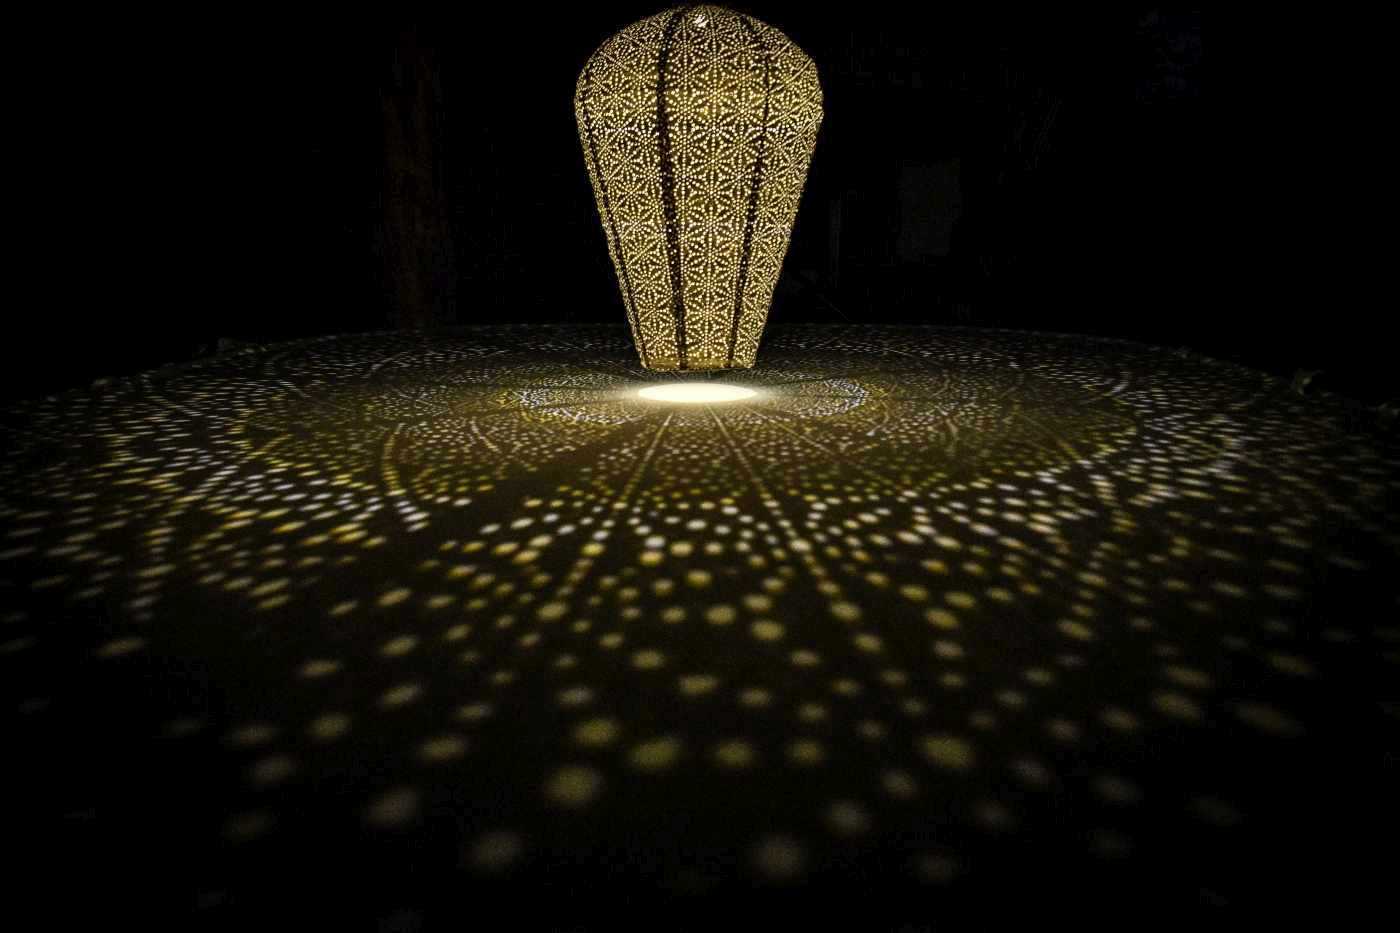 Manga het laatste Wauw solarlampion - buitenlamp als staande tuinlamp met speciale lumiz ring